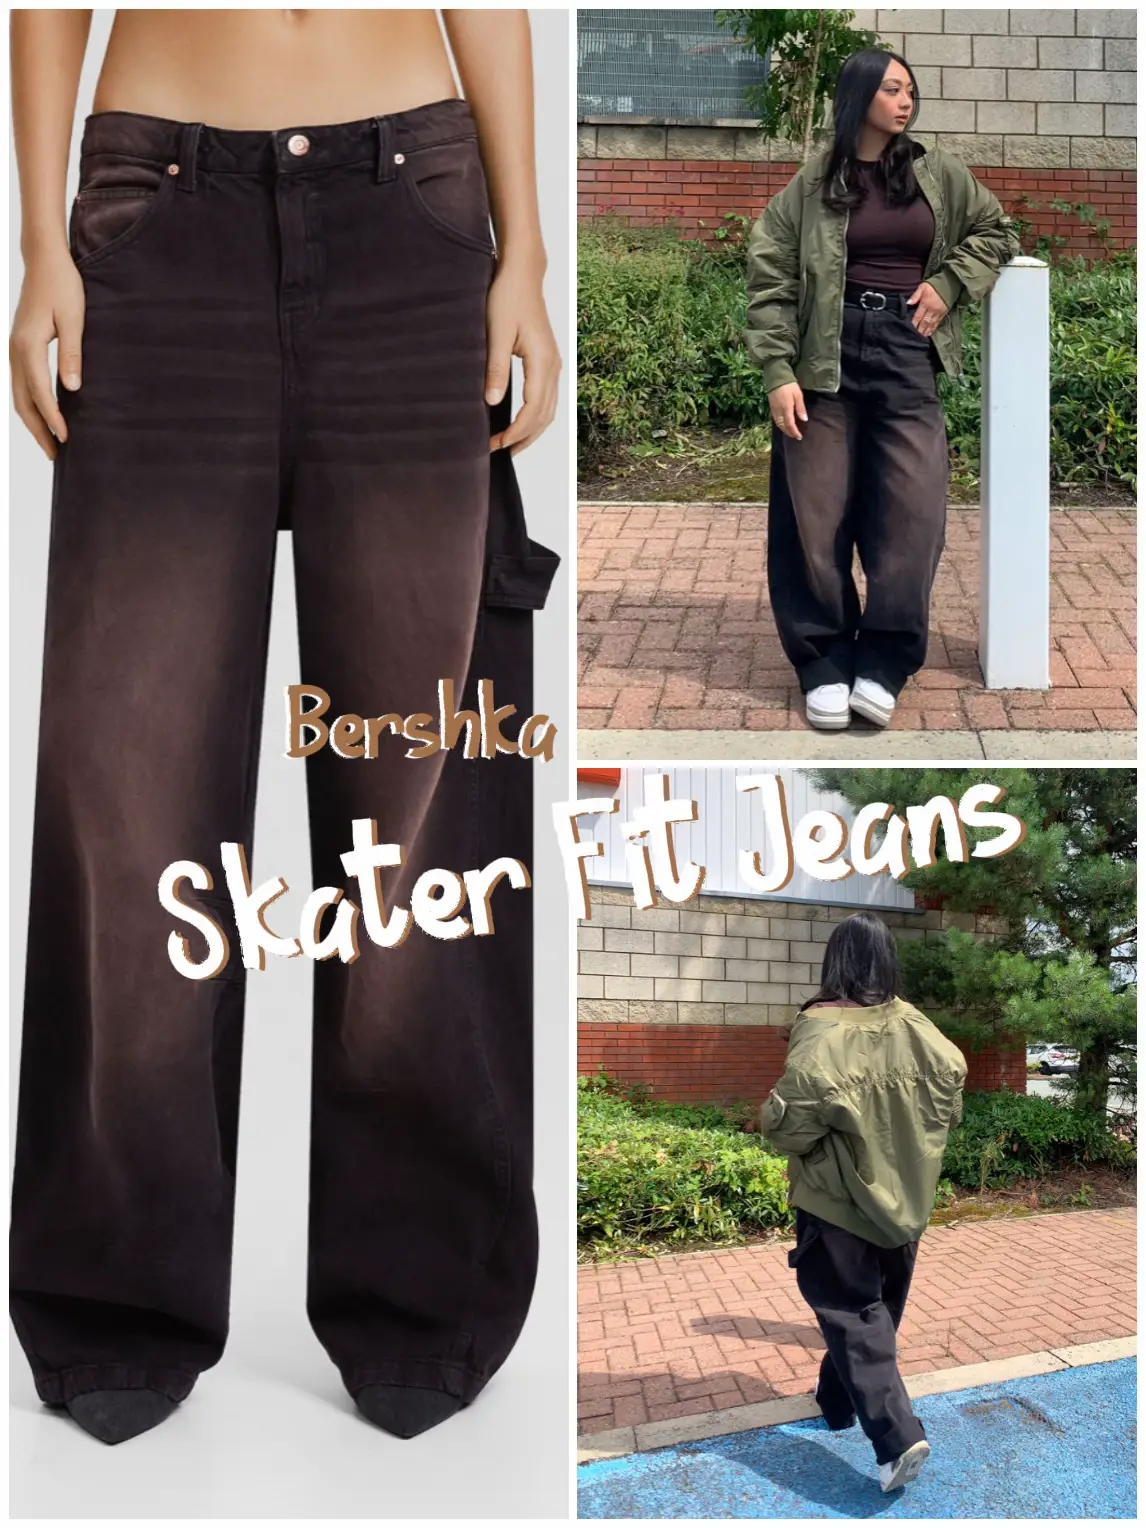 Bershka: Skater Fit Jeans | Gallery posted by Kai Kho | Lemon8